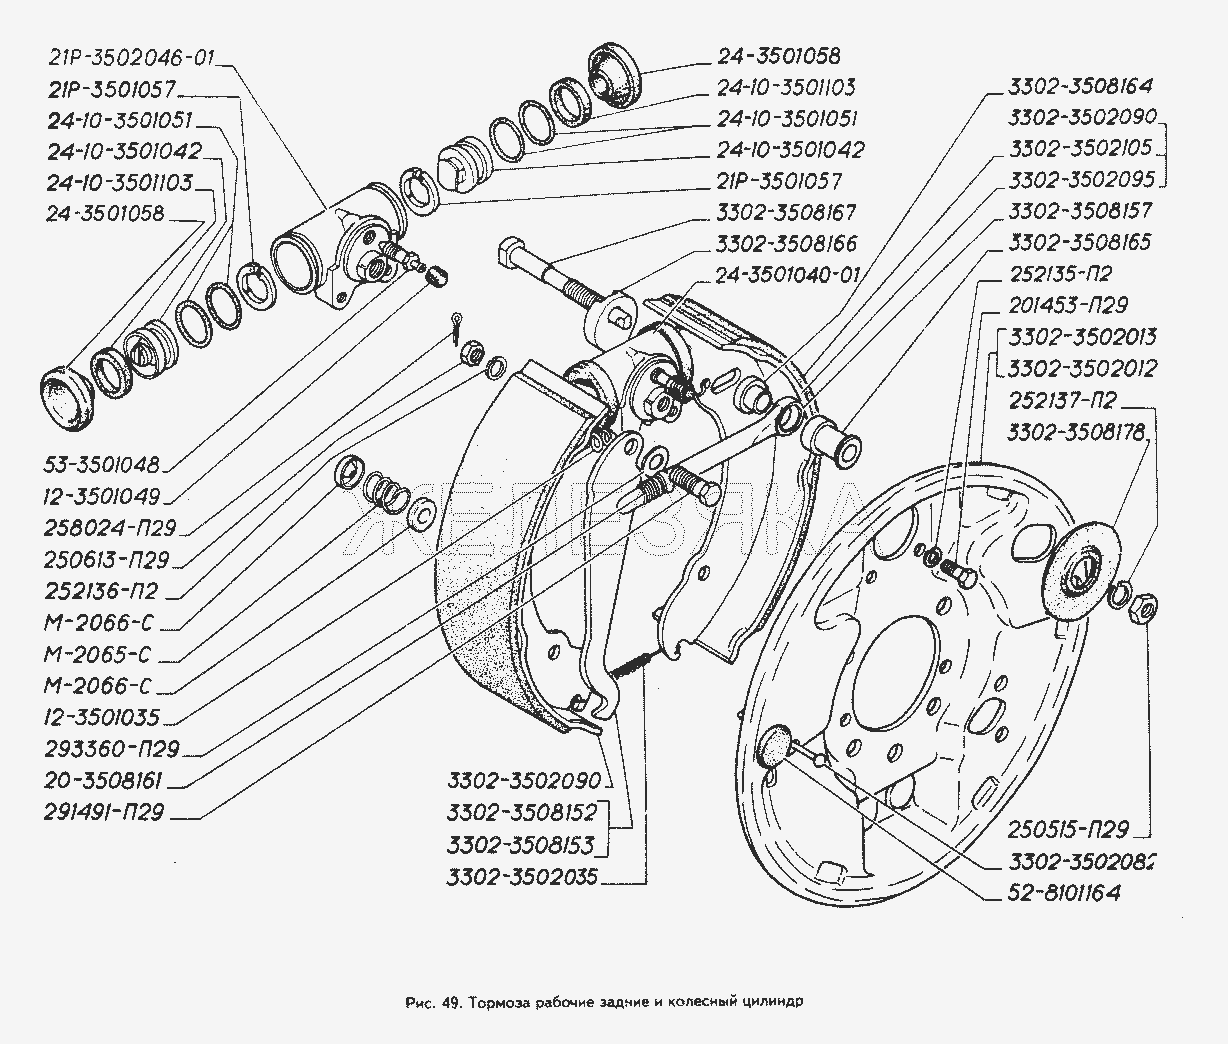 Тормоза рабочие задние и колесный цилиндр.  ГАЗ-3302 (ГАЗель)